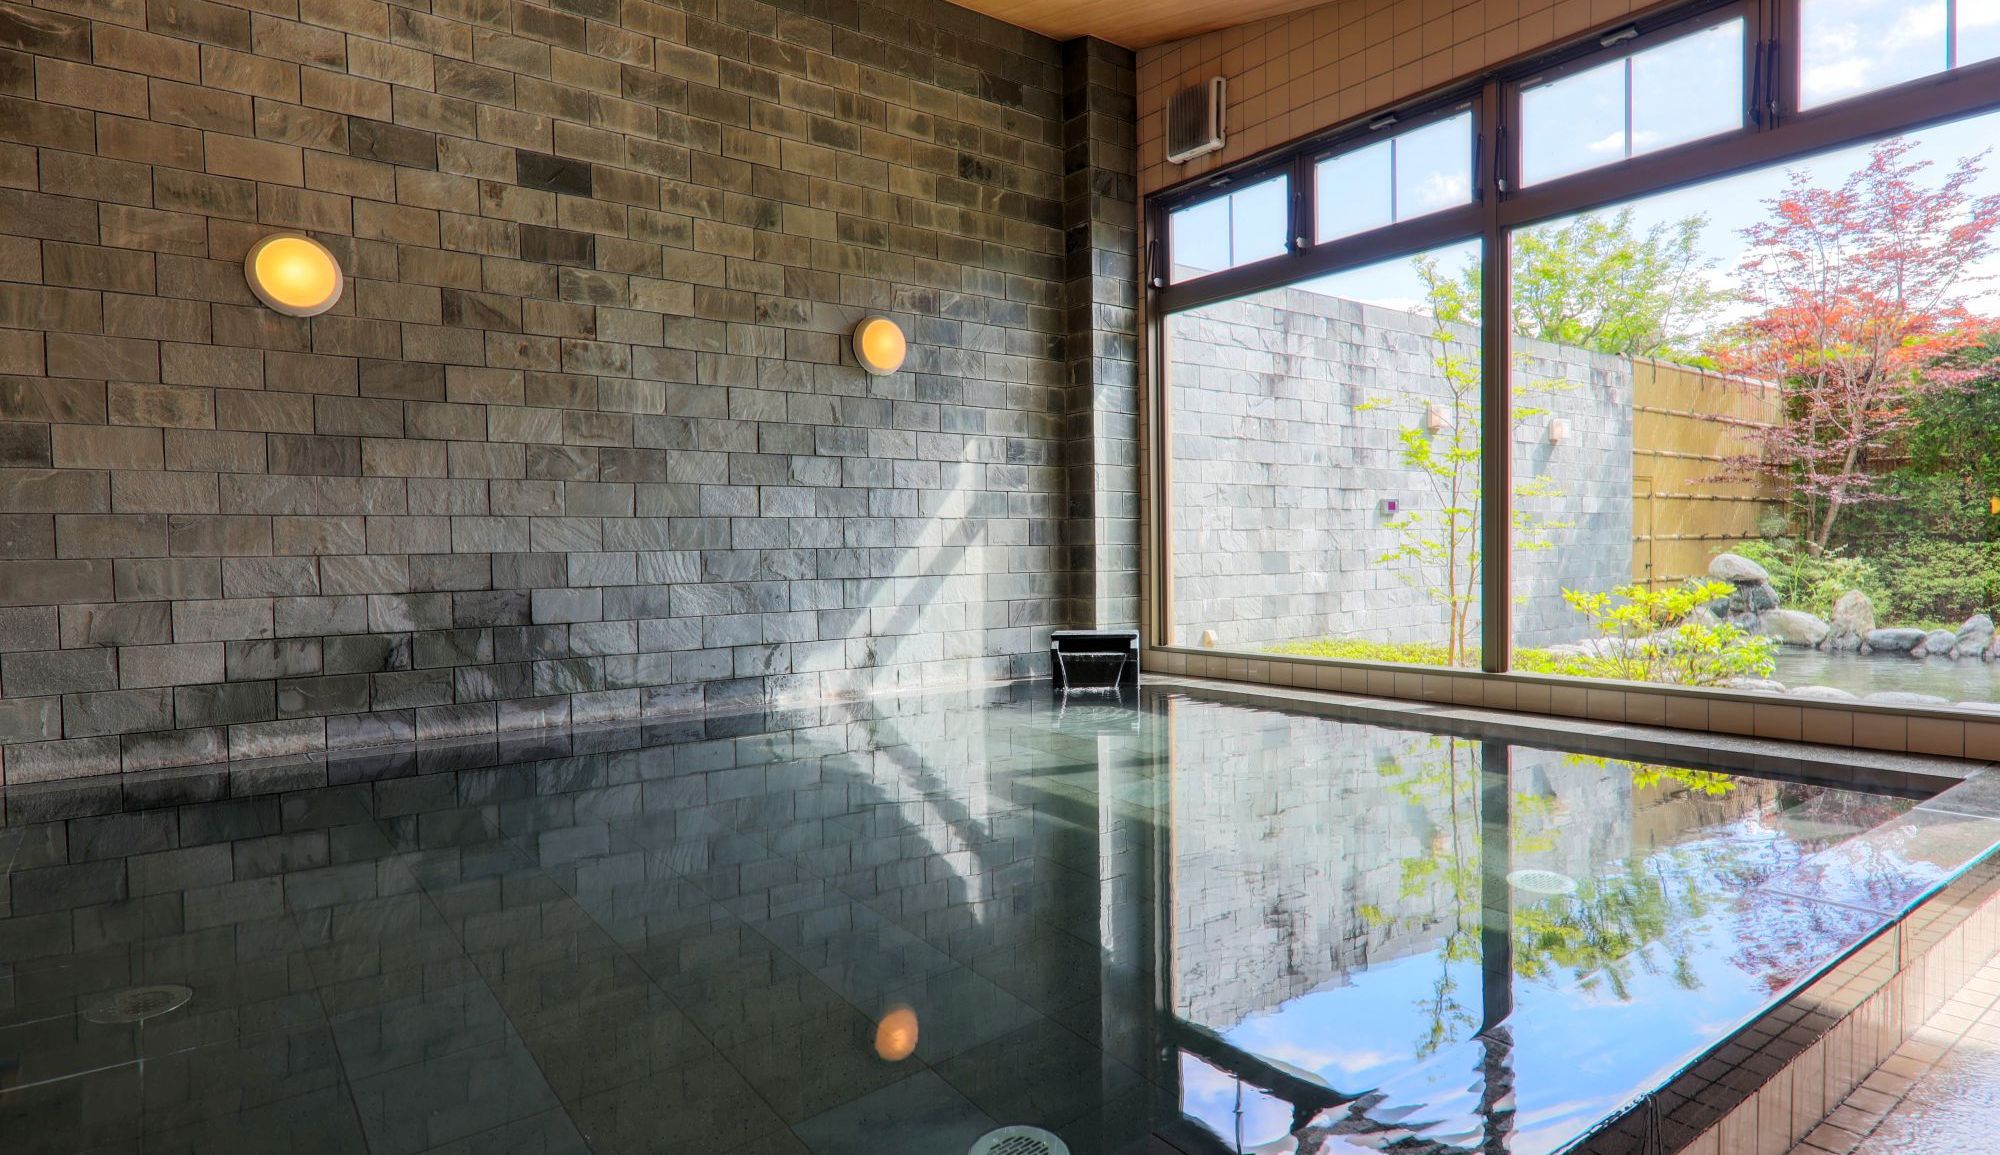 【内風呂】ひばの木の浴槽内に富士熔岩石を一面に敷きつめ、温泉成分と溶岩石の成分の両方が楽しめます